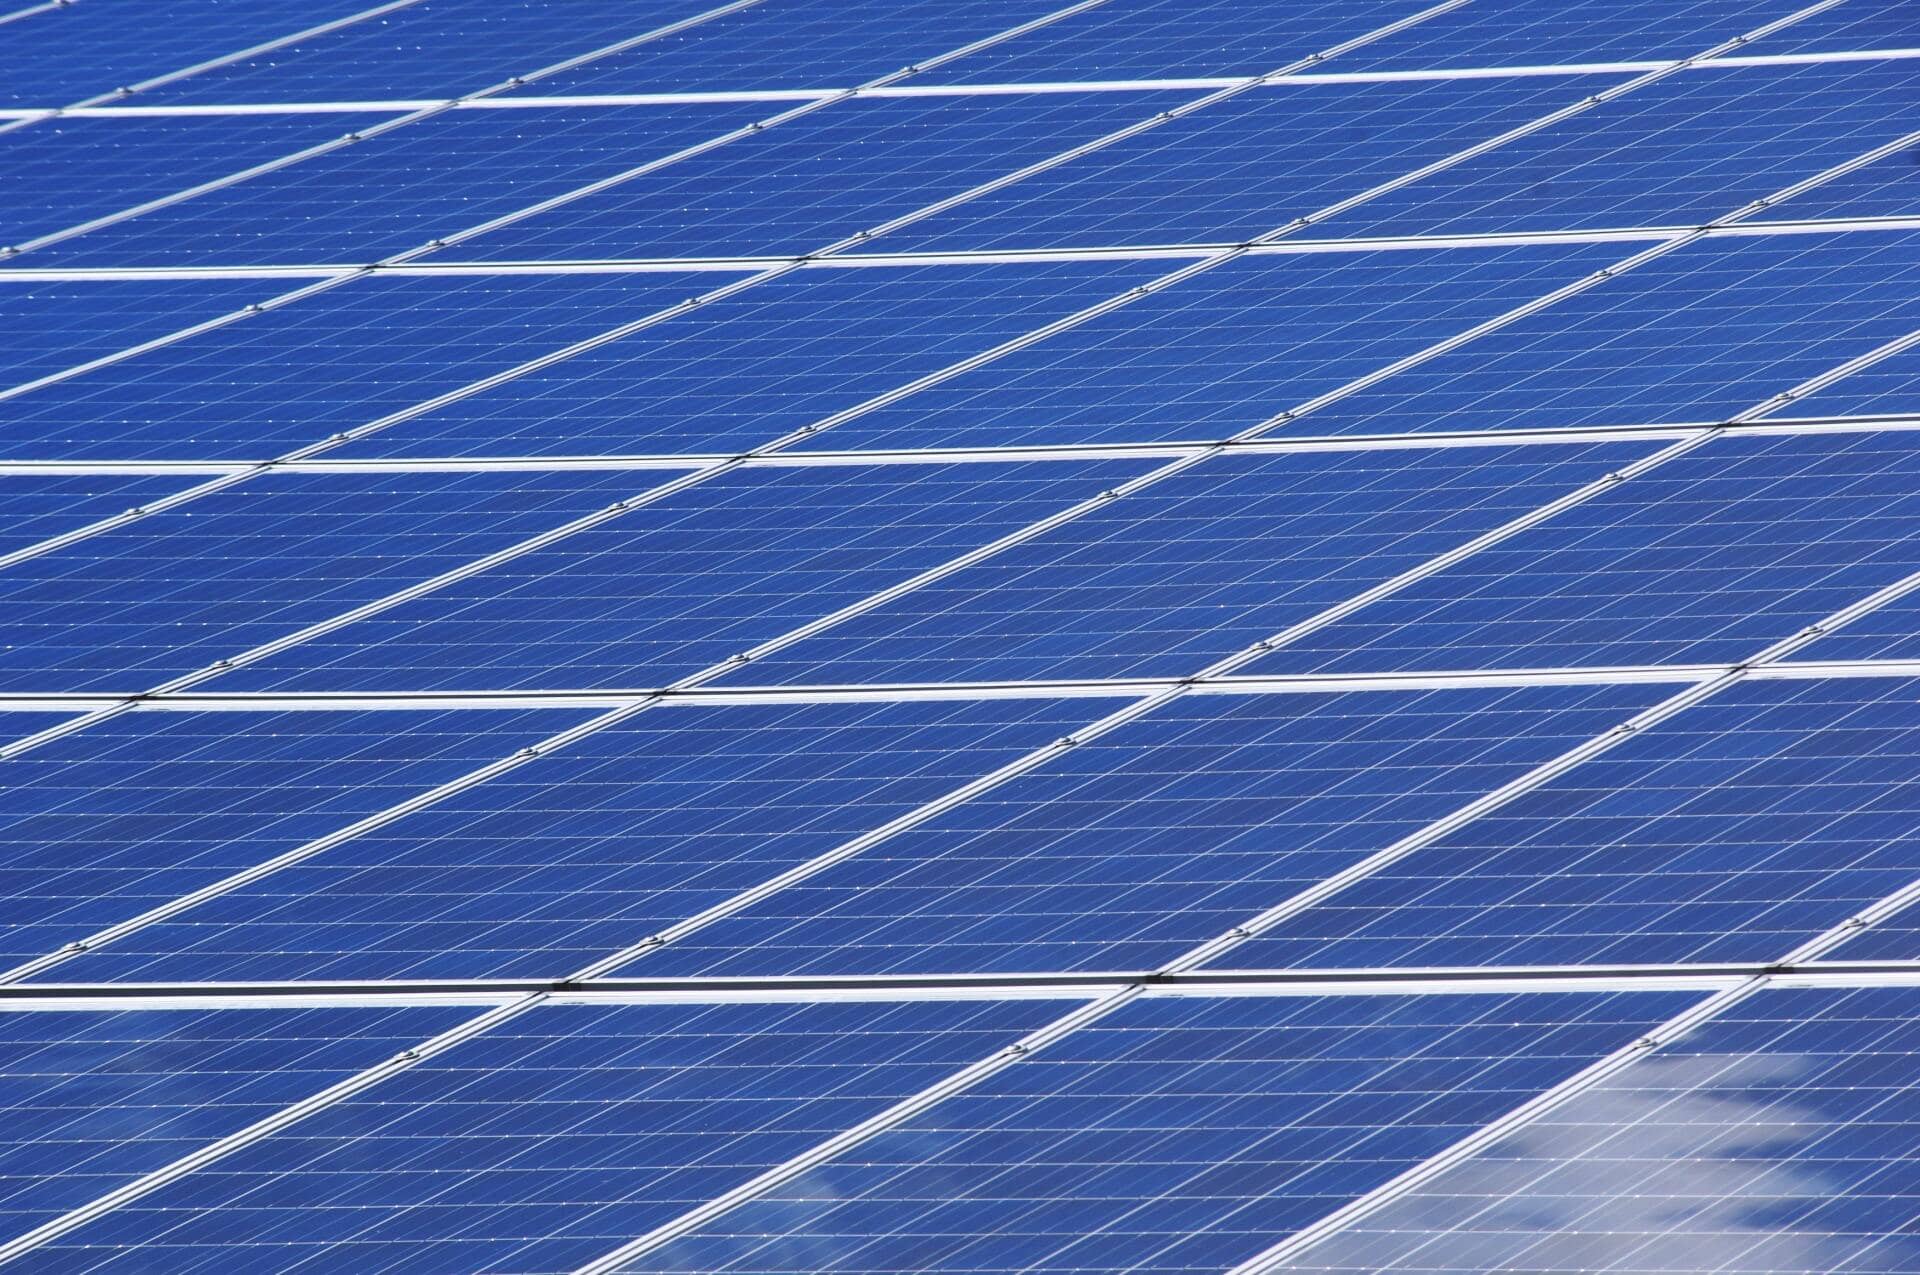 Cuáles son los paneles solares más potentes? – La Bodega Solar